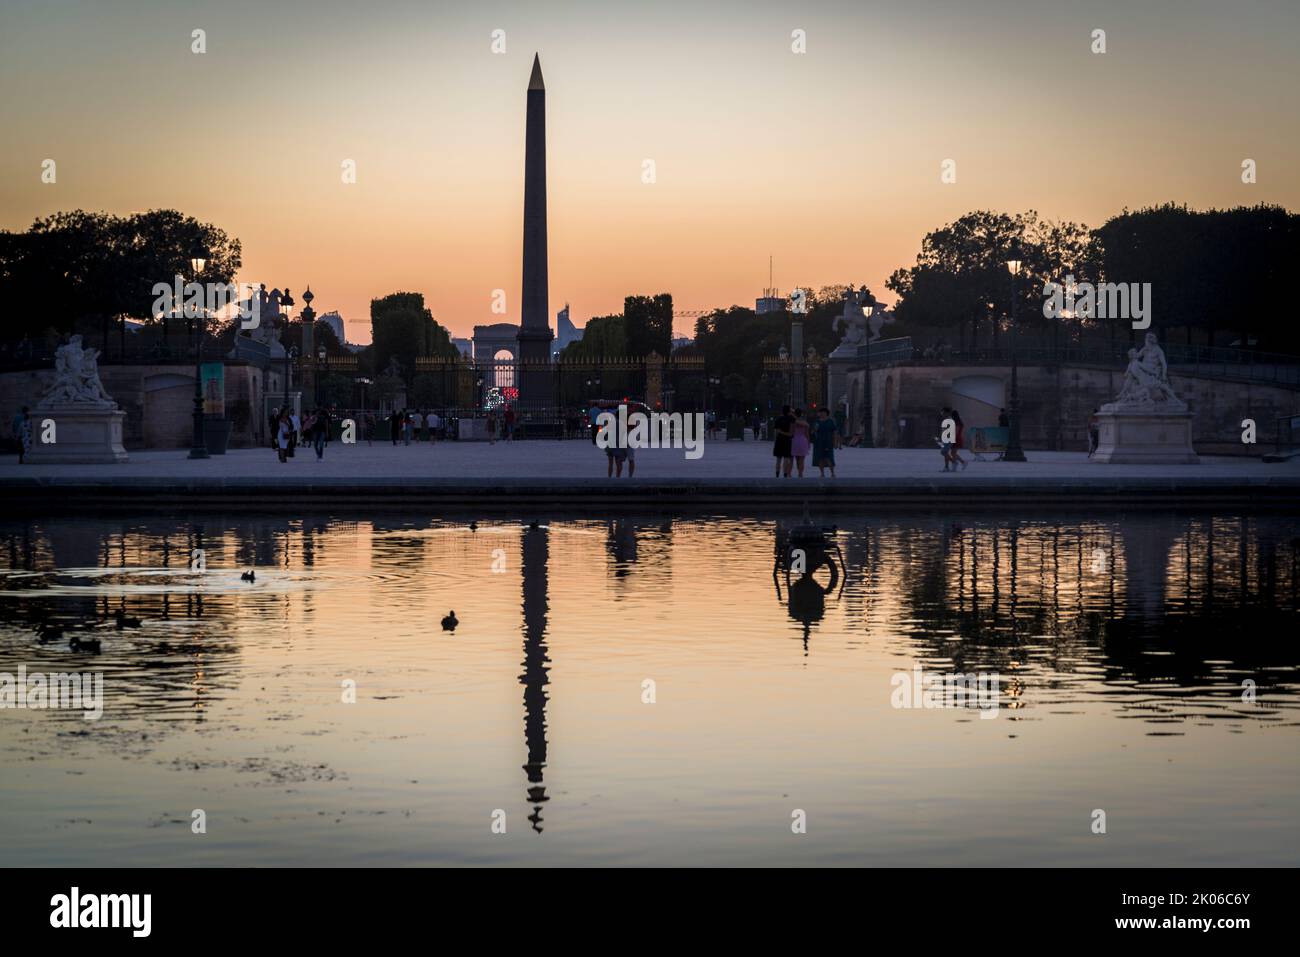 Bassin ottogonale, stagno ottogonale e obelisco egiziano al tramonto, Jardin des Tuileries, Parigi, Francia Foto Stock